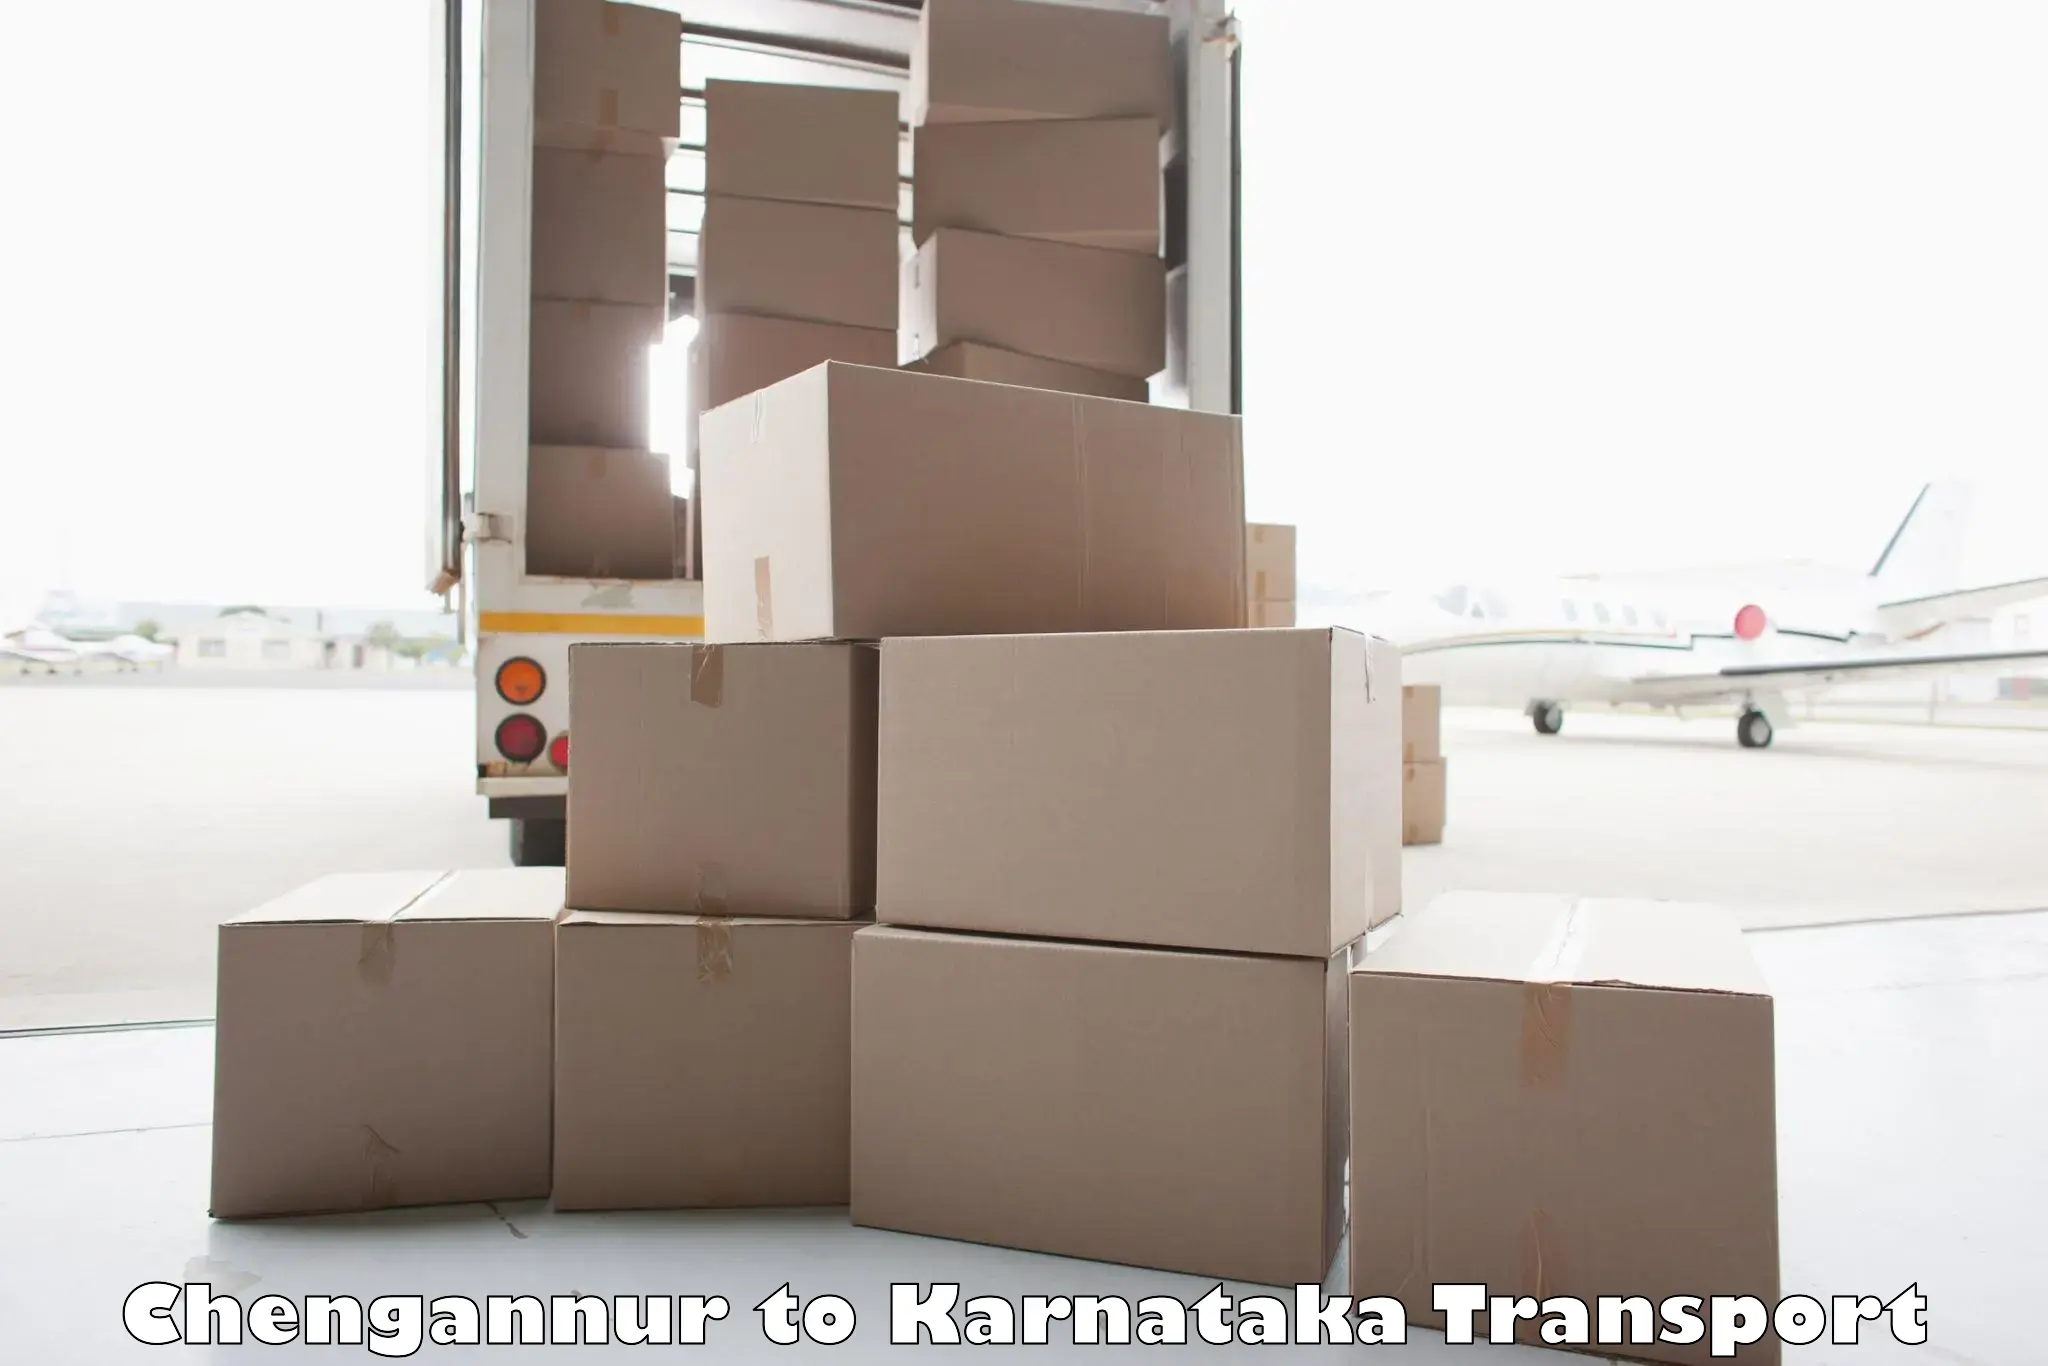 Daily transport service in Chengannur to Karnataka